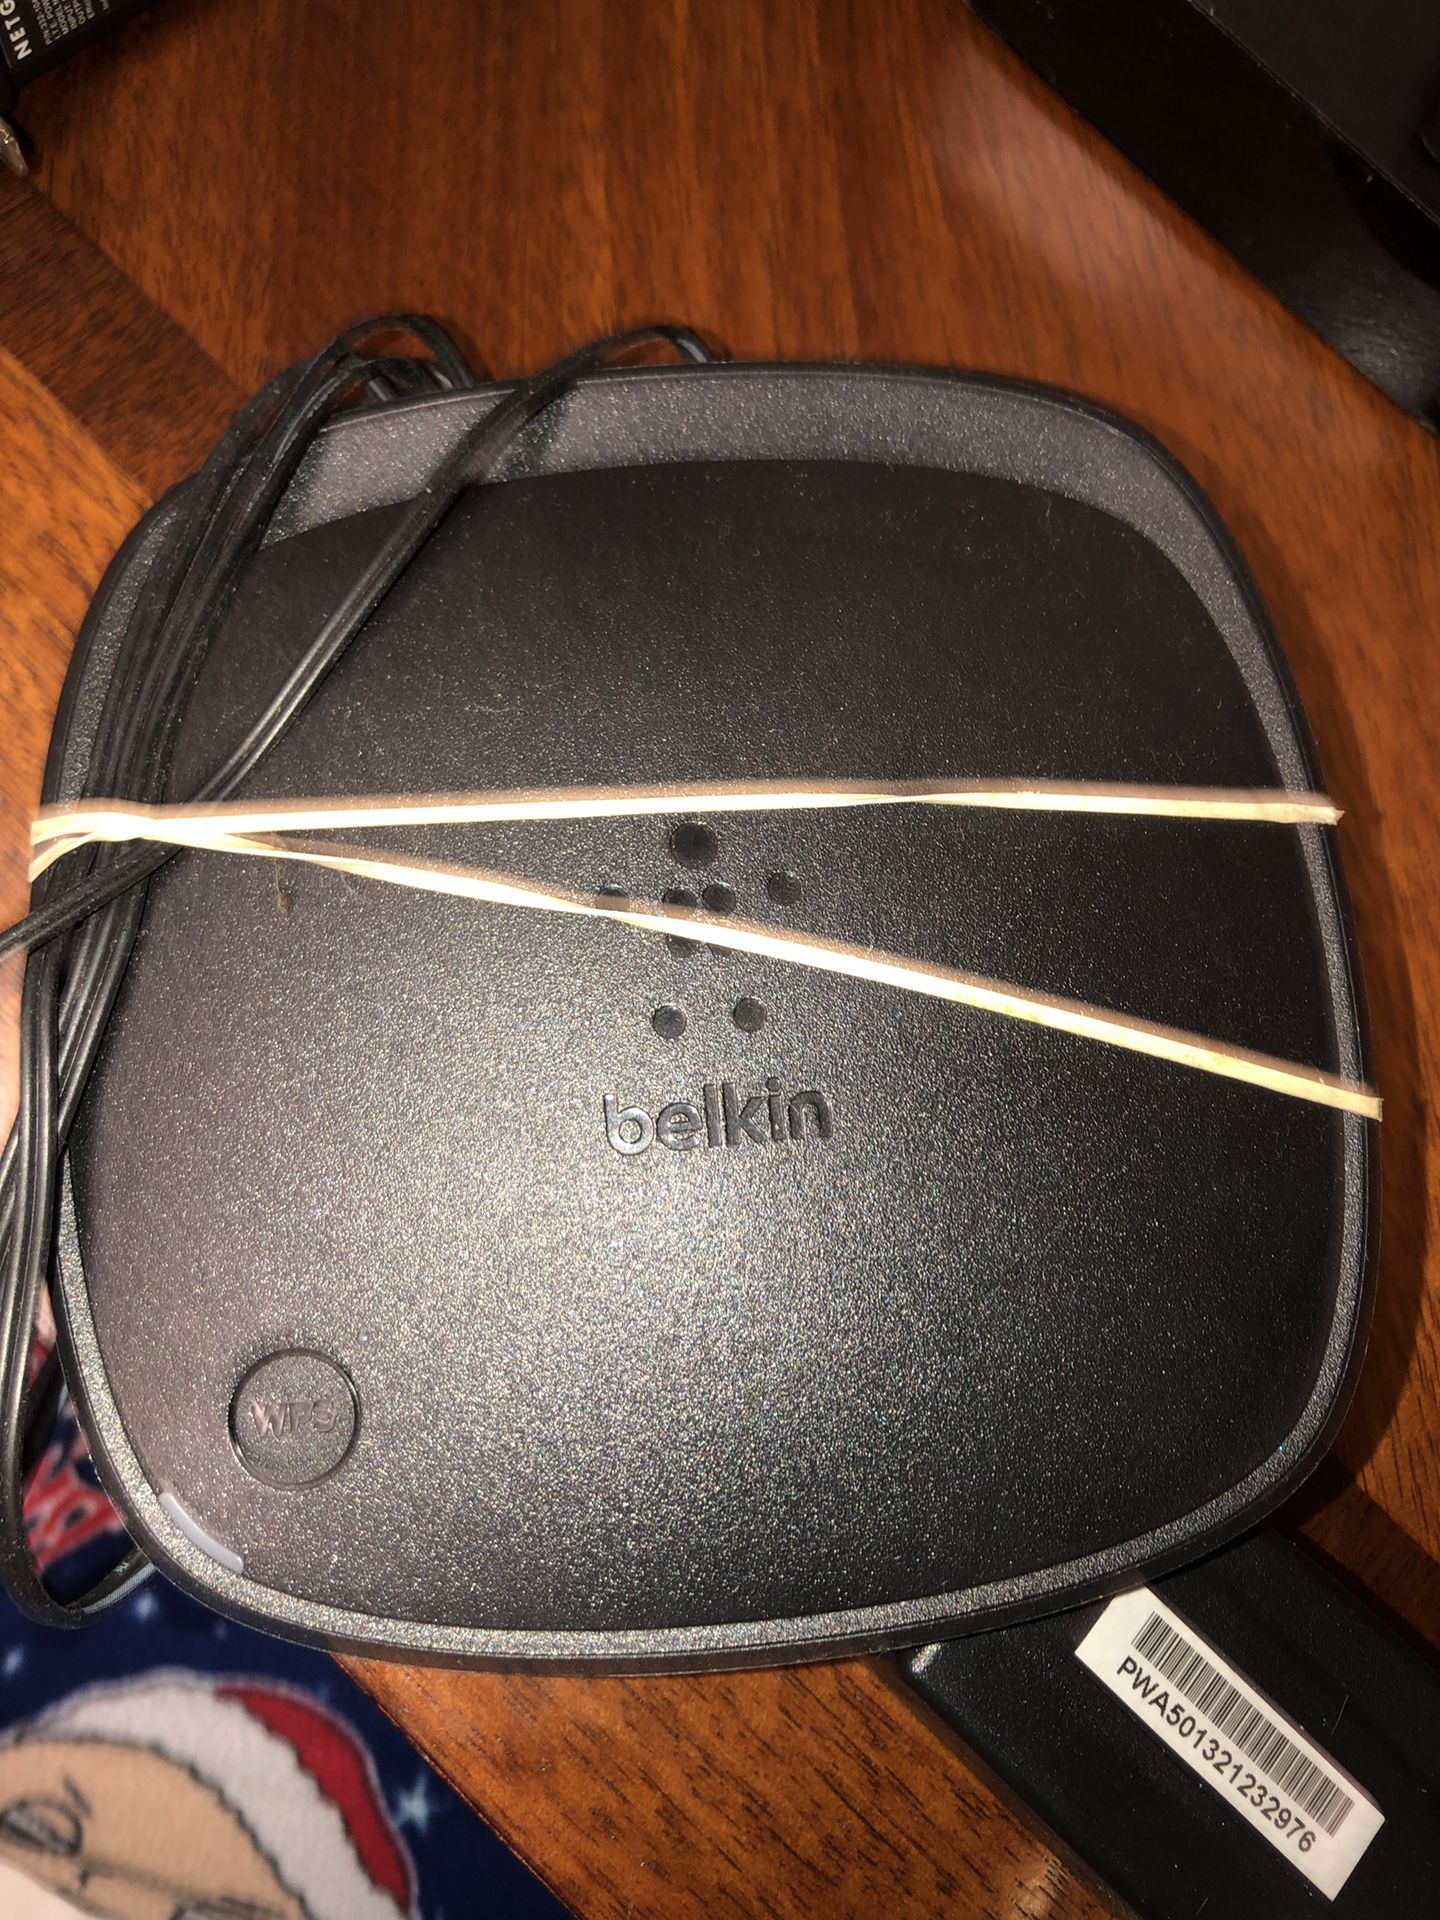 Belkin N300 wifi router